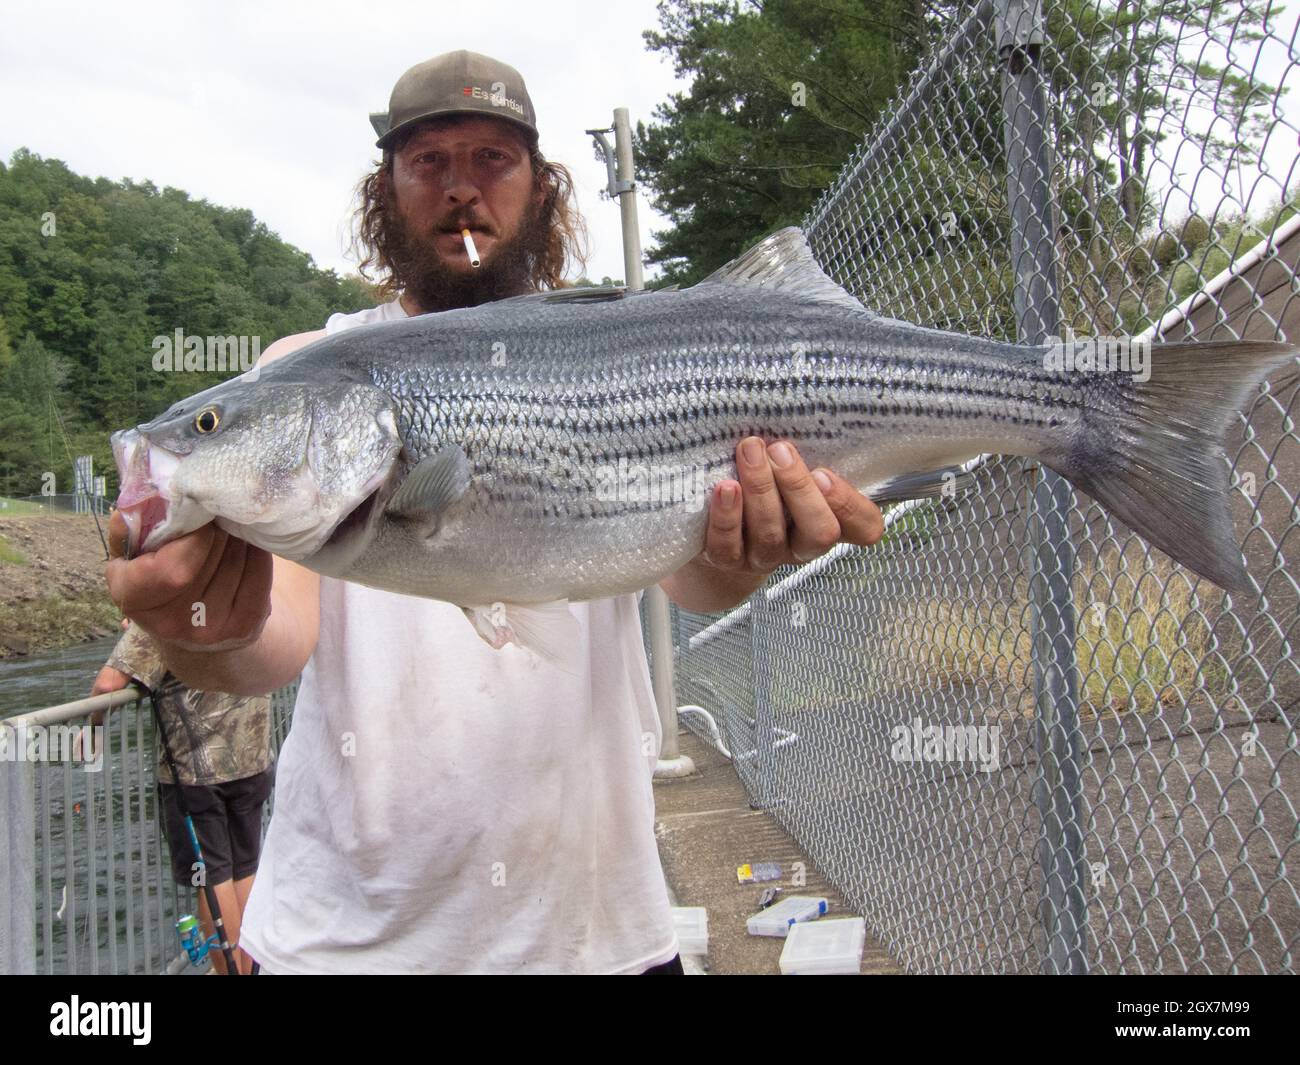 Orgulloso pescador de Alabama mostrando su pesca de bajo a rayas. Foto de stock